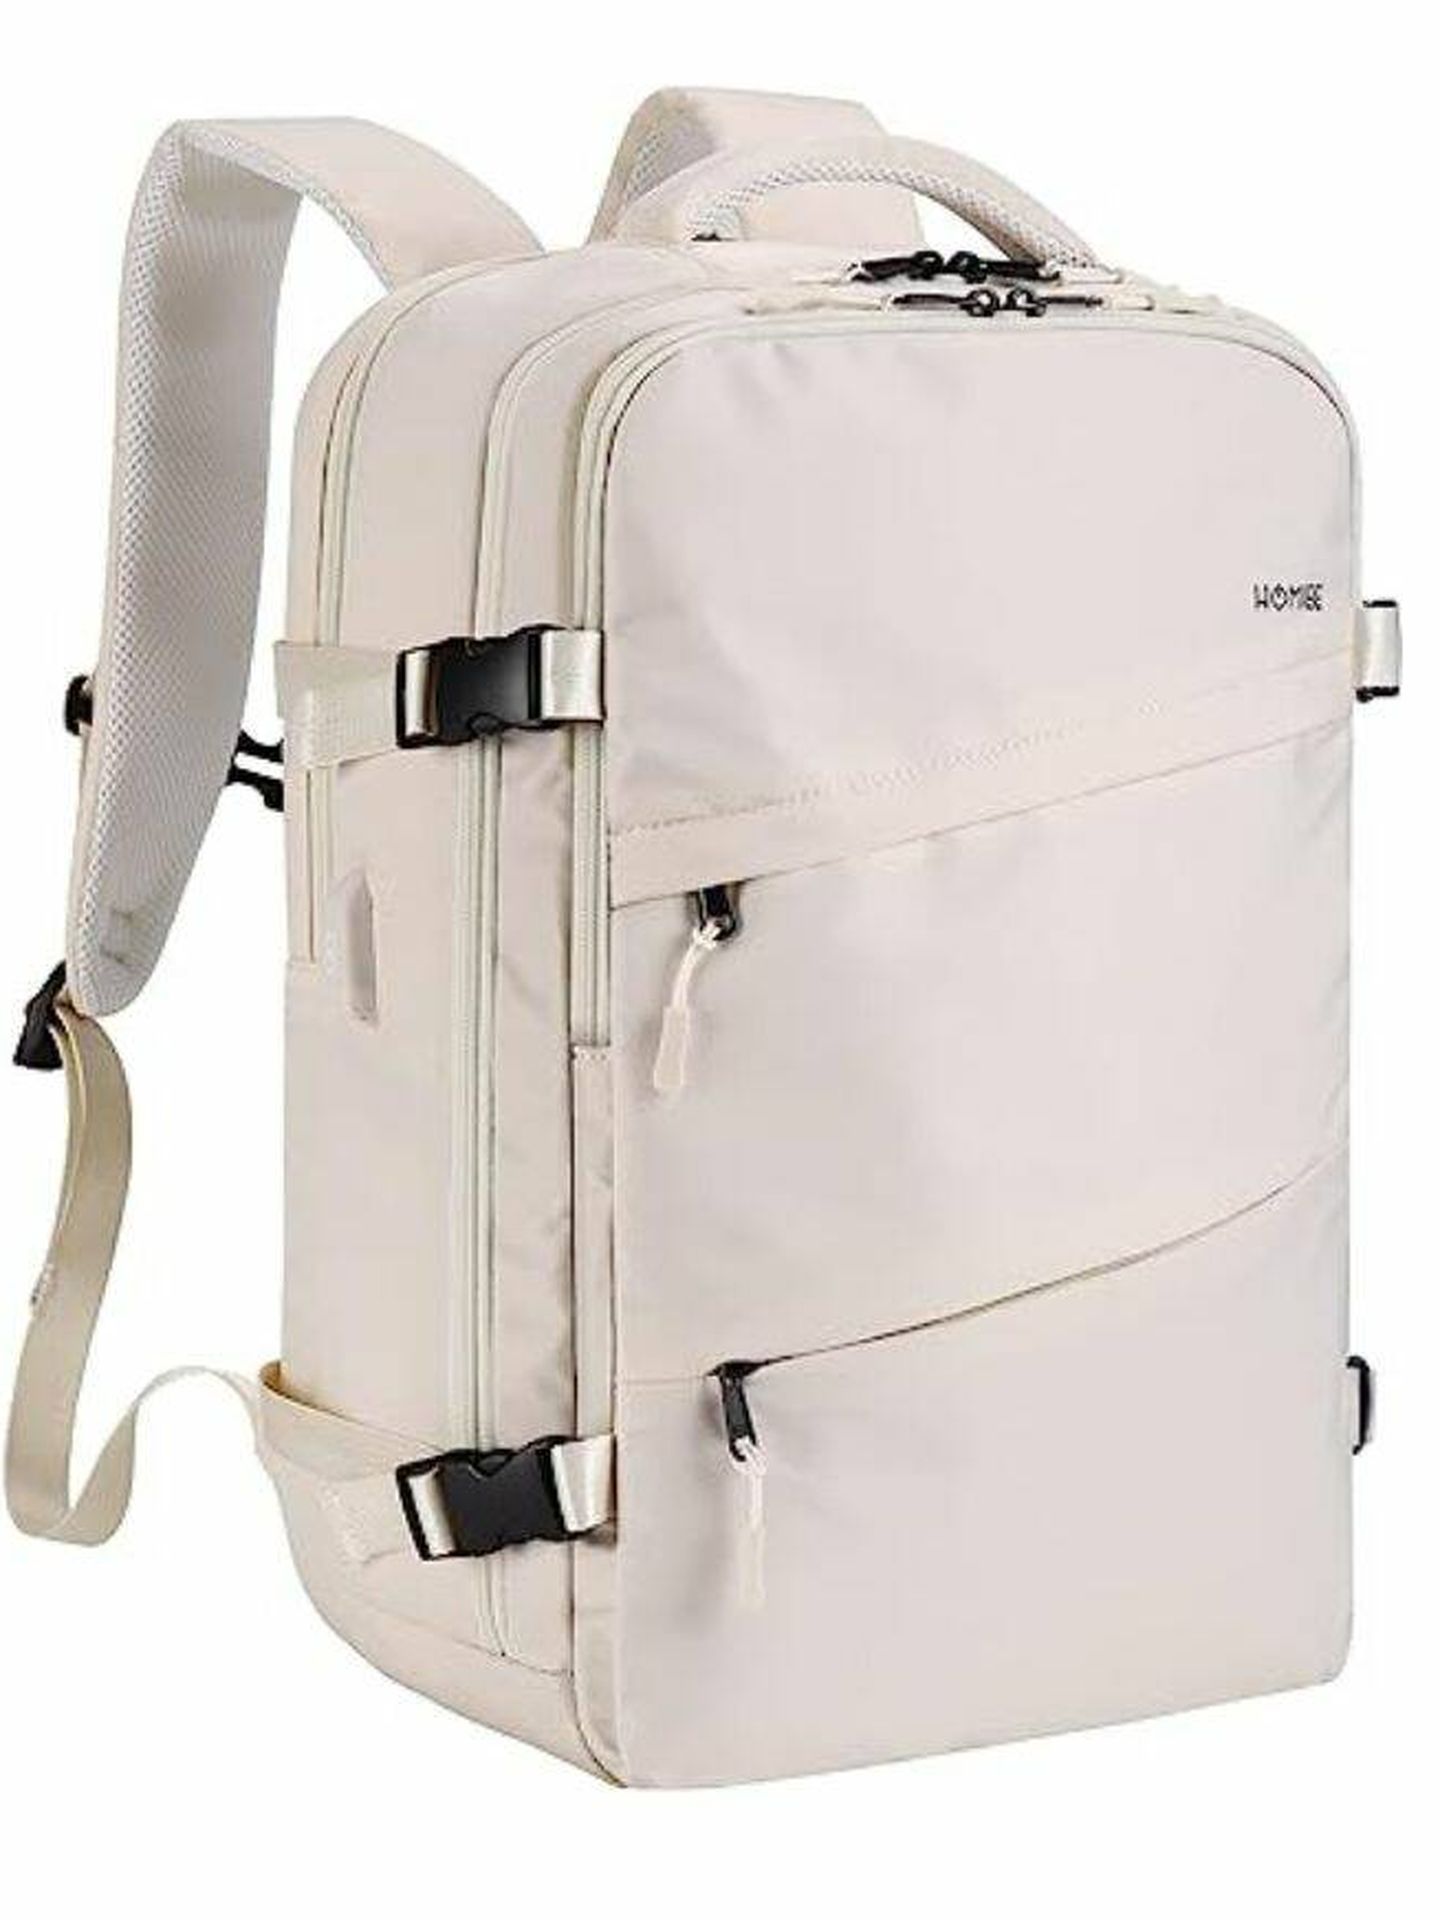 Esta mochila de viaje se ha hecho viral en TikTok por su máxima capacidad